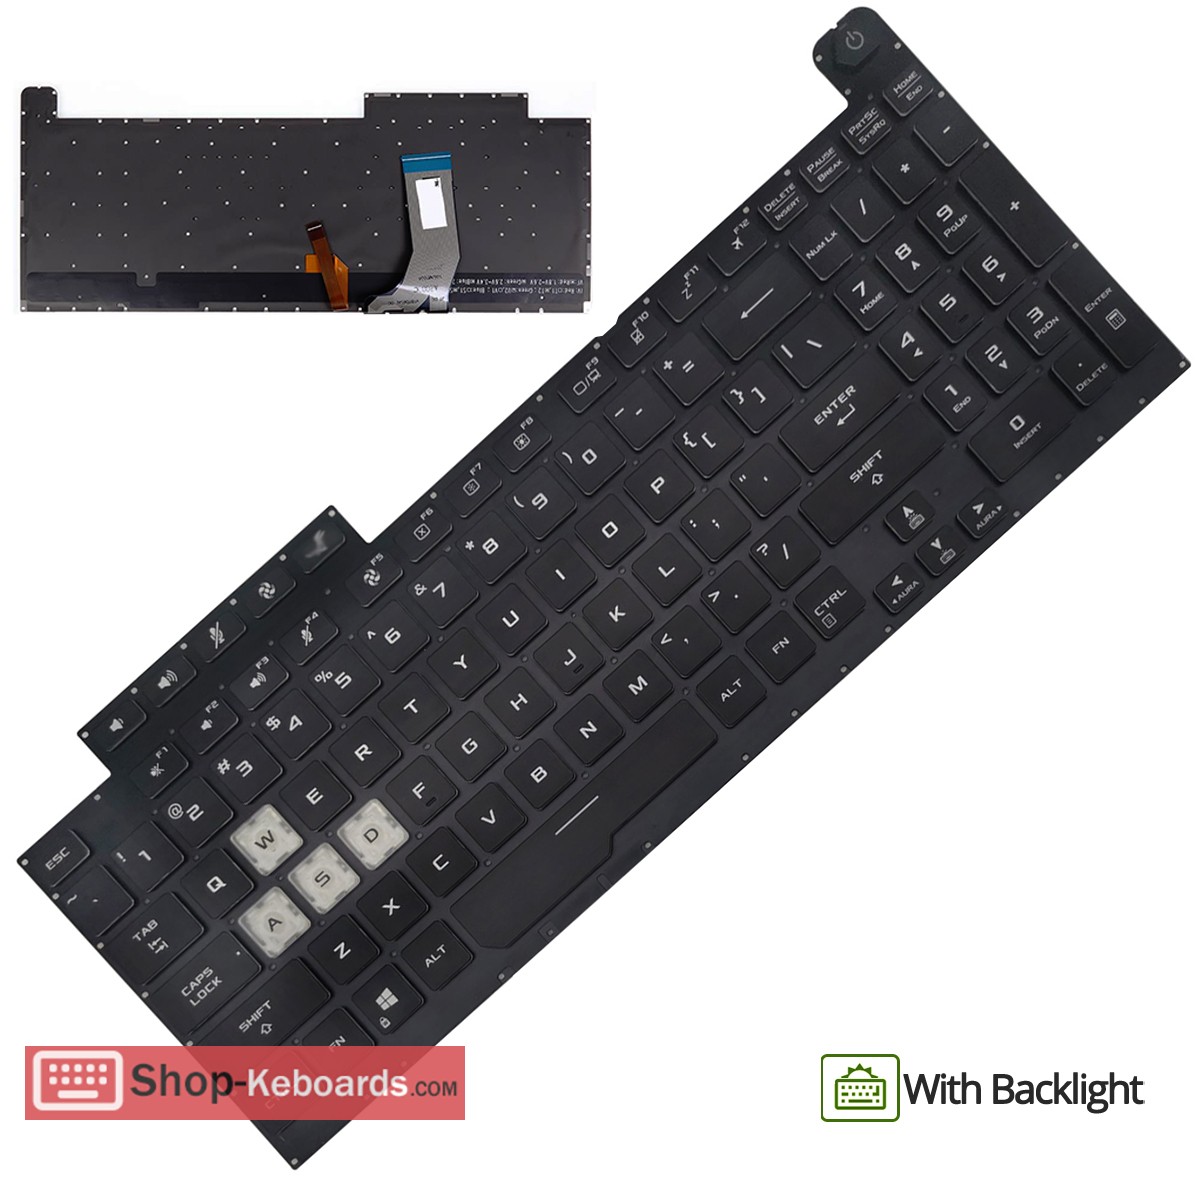 Asus 0KNR0-661LAR00  Keyboard replacement